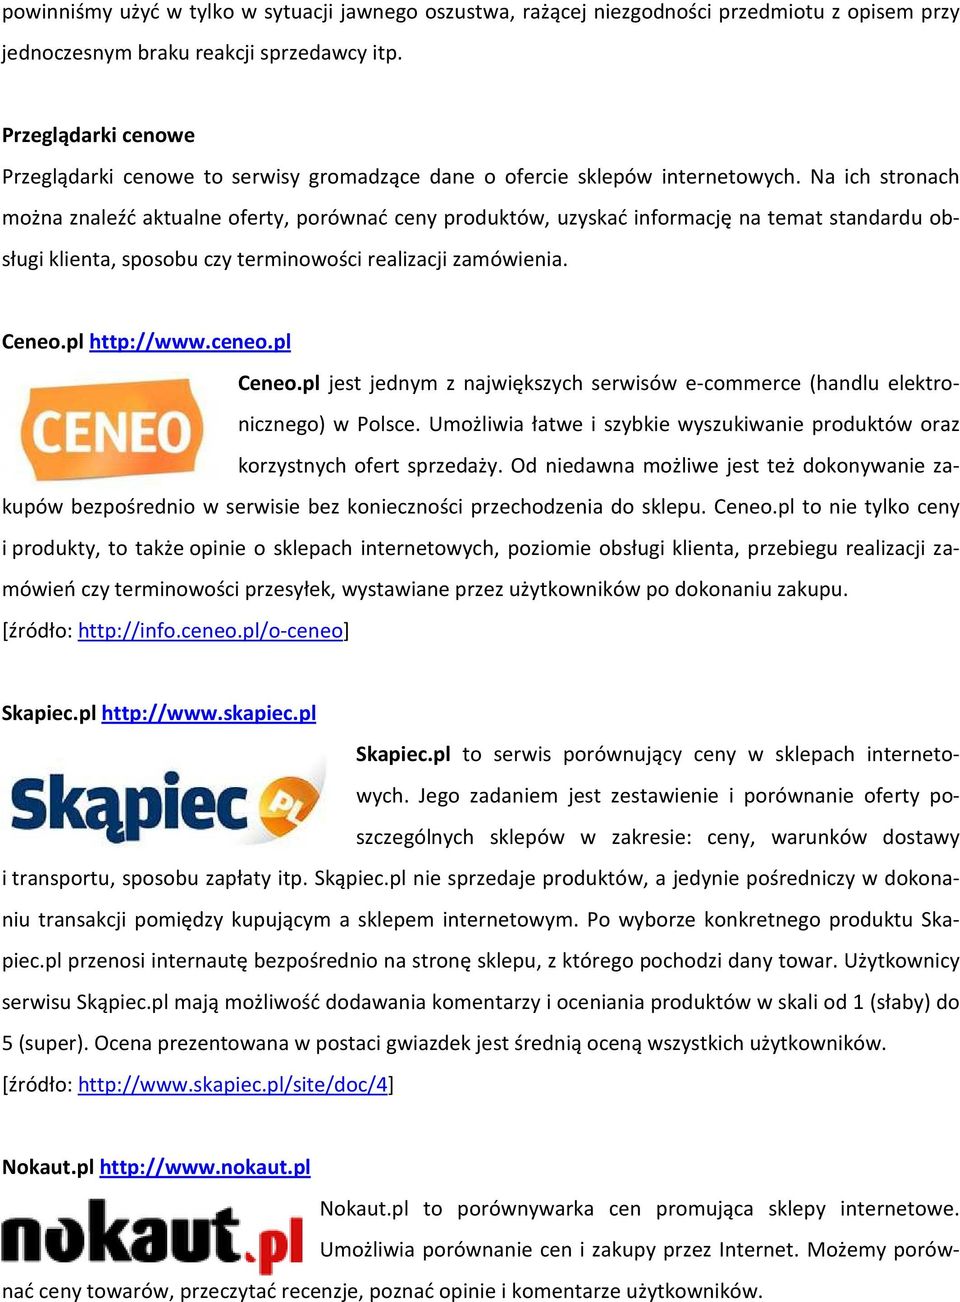 Na ich stronach można znaleźć aktualne oferty, porównać ceny produktów, uzyskać informację na temat standardu obsługi klienta, sposobu czy terminowości realizacji zamówienia. Ceneo.pl http://www.